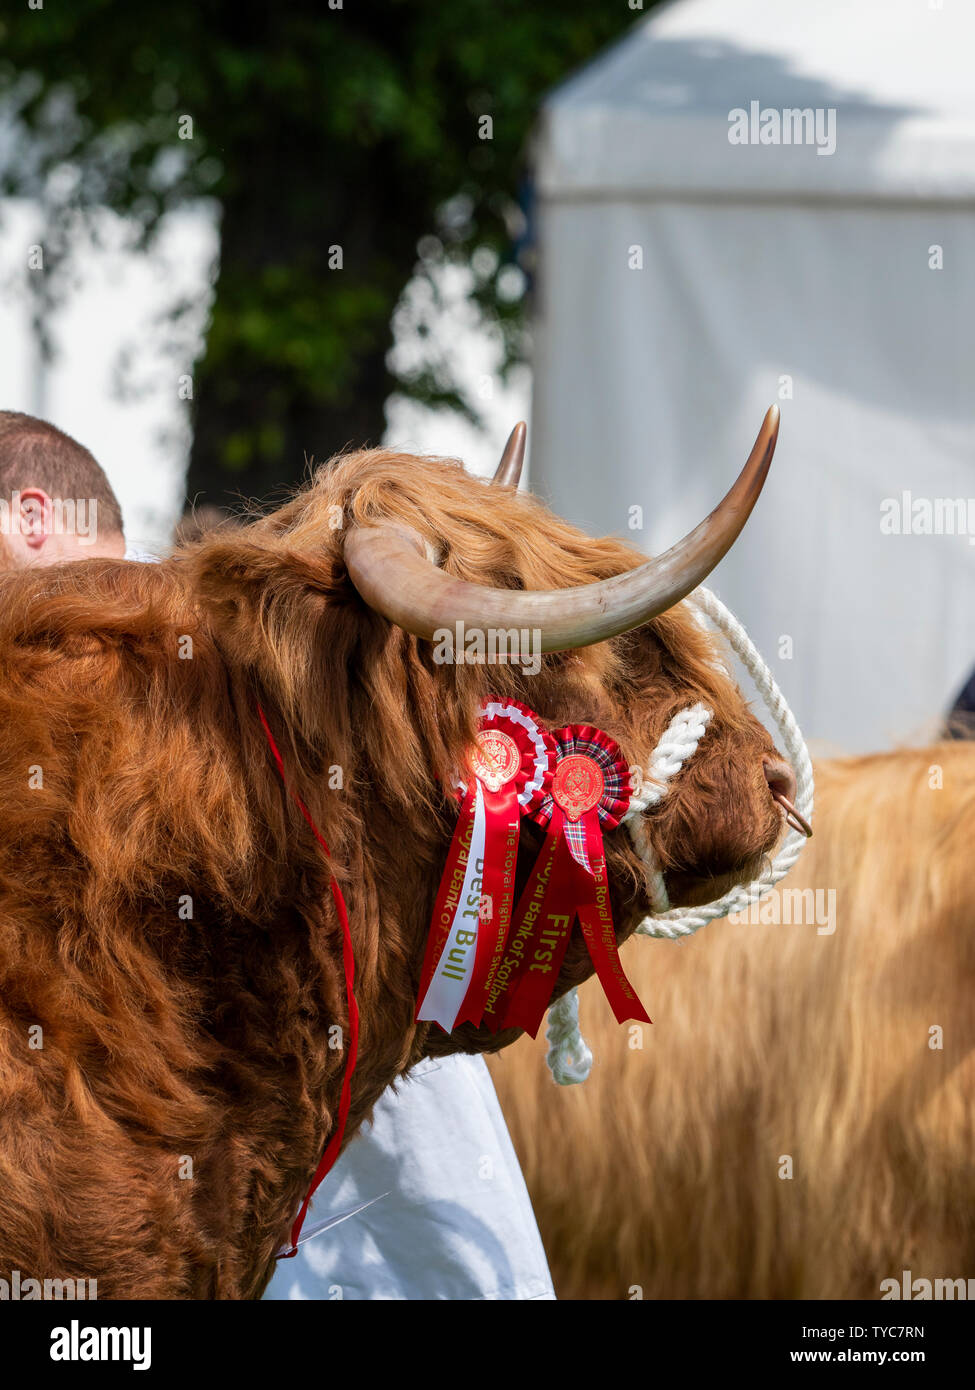 Bestiame delle Highland allo spettacolo Foto Stock